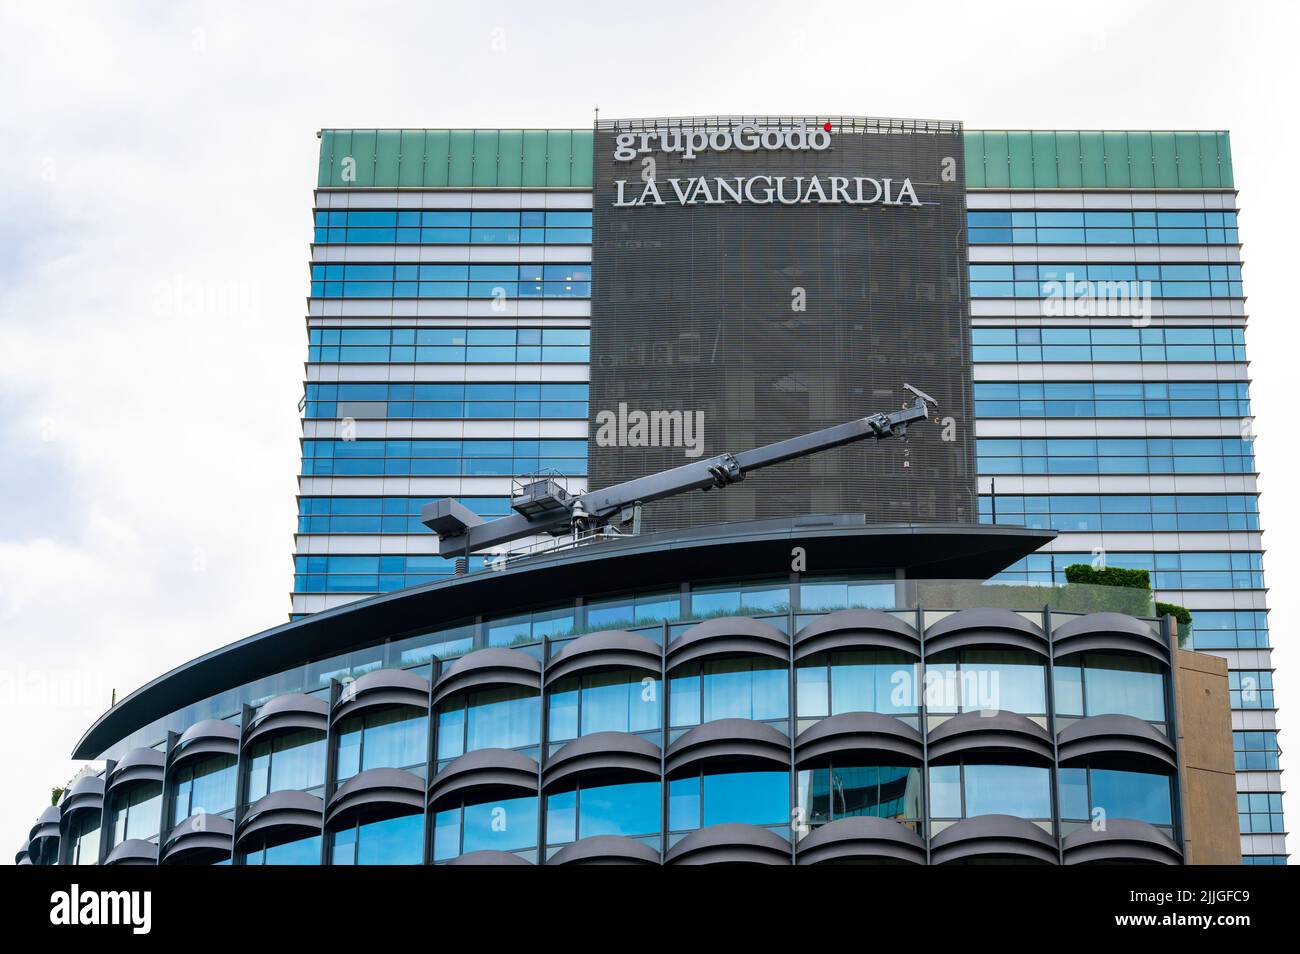 Zeichen der Grupo Godo La Vanguardia auf einem Gebäude in der Stadt. Stockfoto